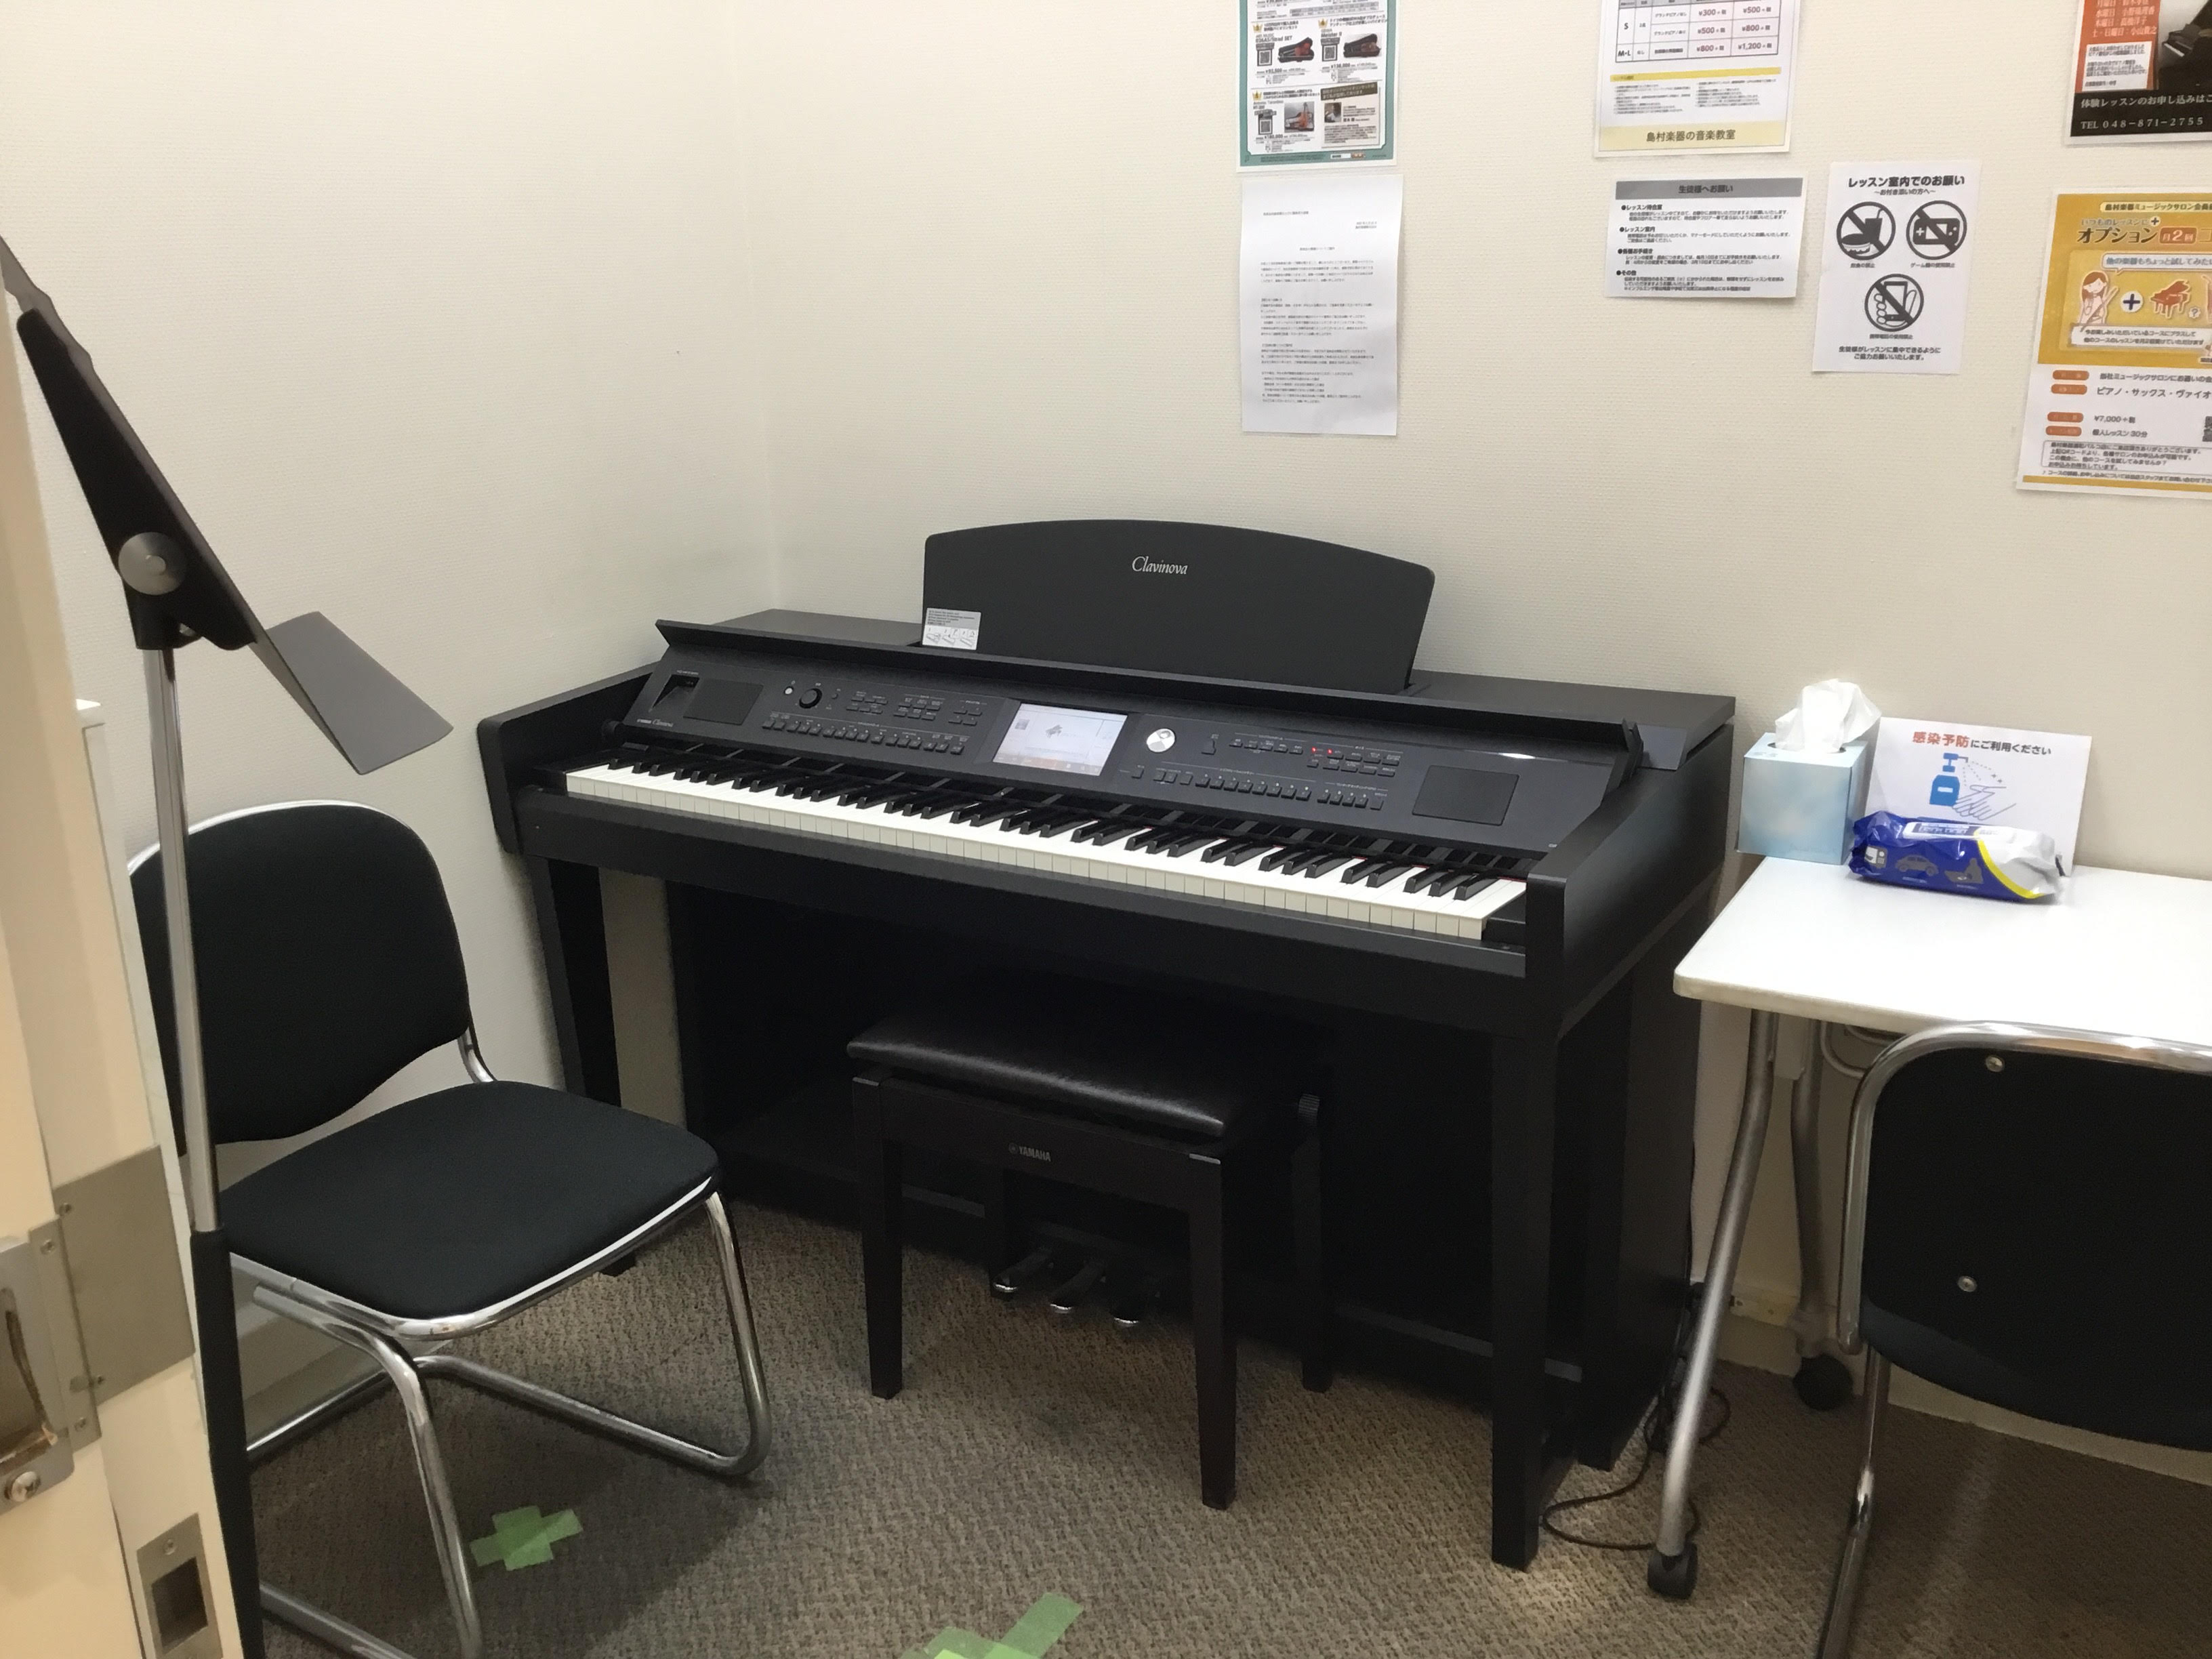 レンタルルーム ボーカル グランドピアノ 楽器の練習室をお探しの方へ 浦和パルコ店 店舗情報 島村楽器